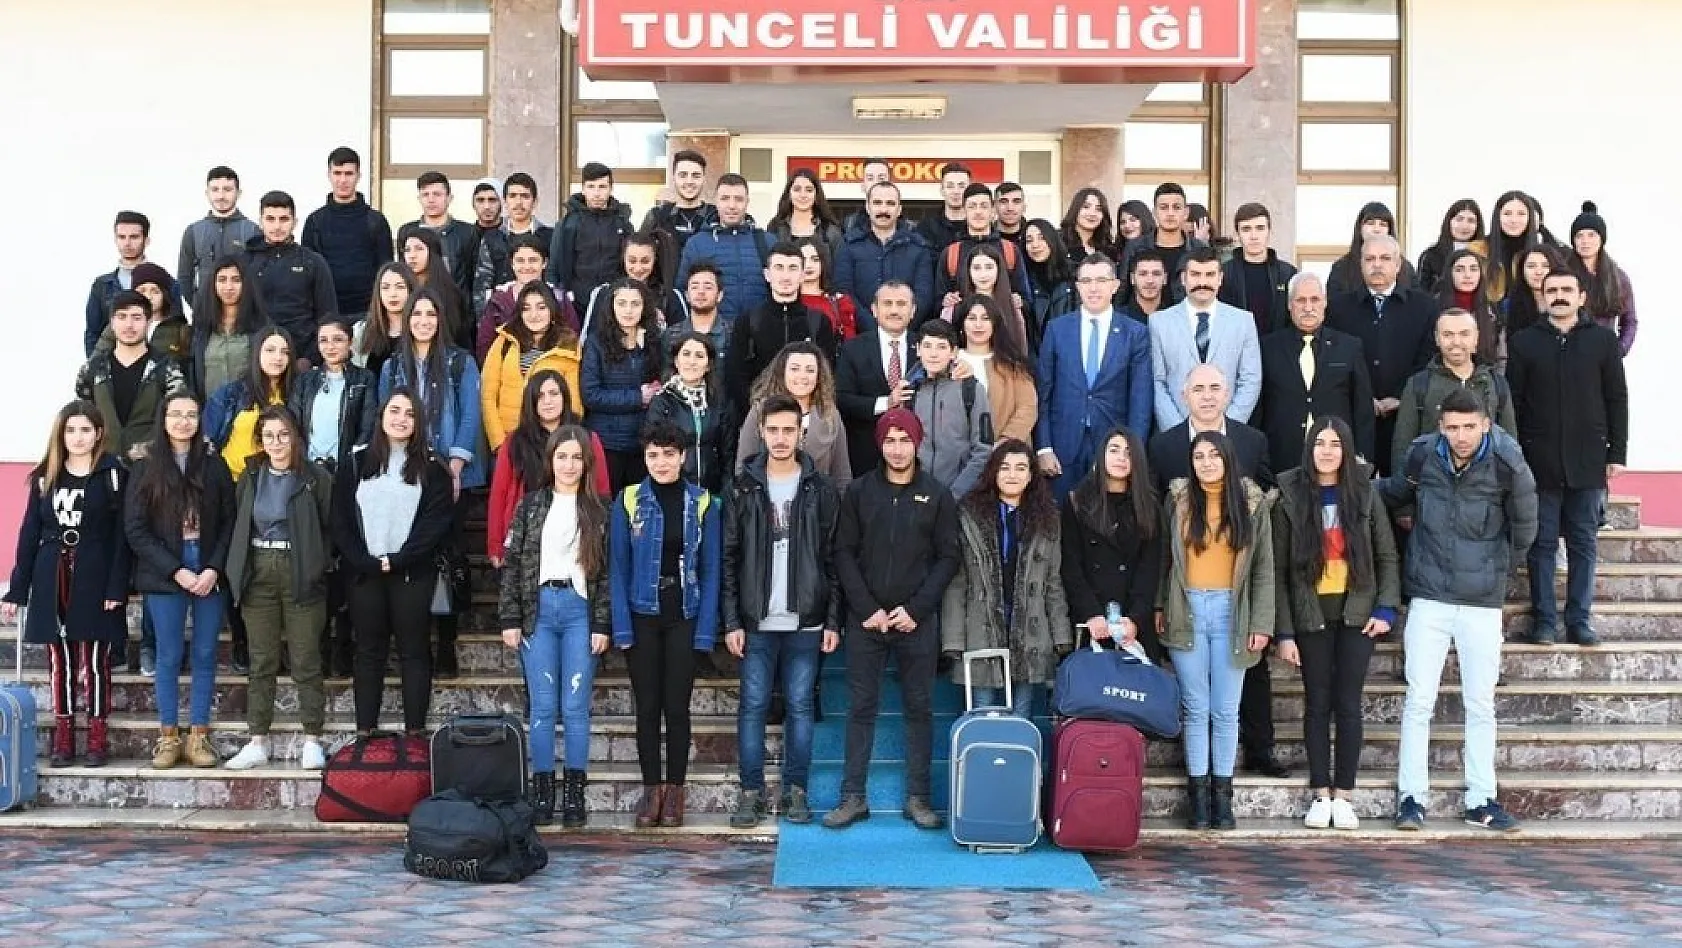 Tunceli'de 2 bin 19 öğrenciye uçakla yurtiçi gezisi 